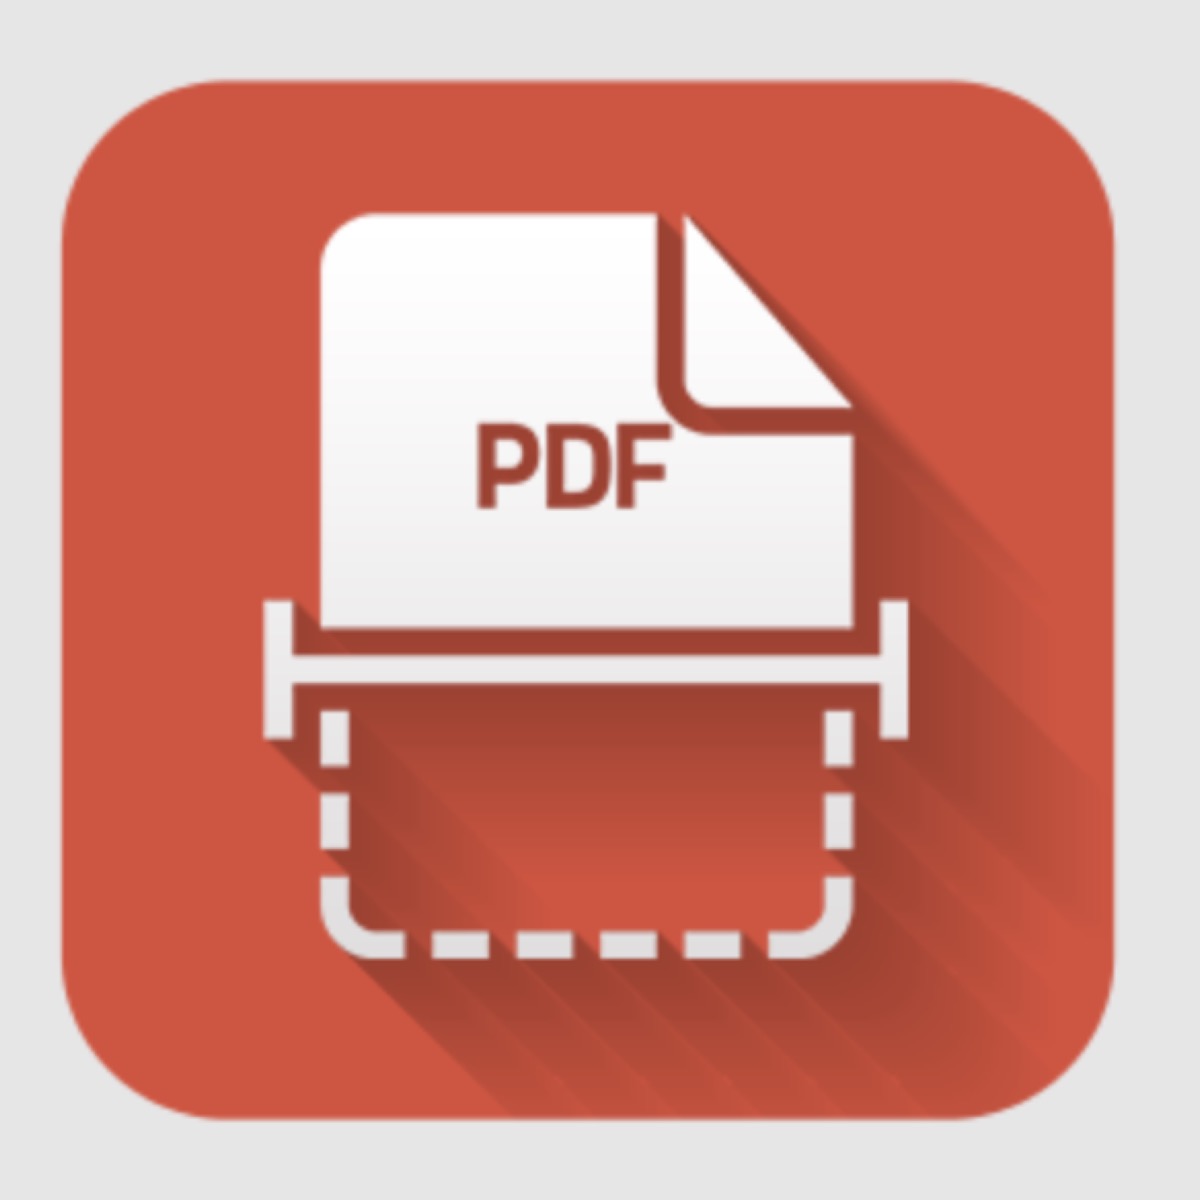 Free Scan to PDF